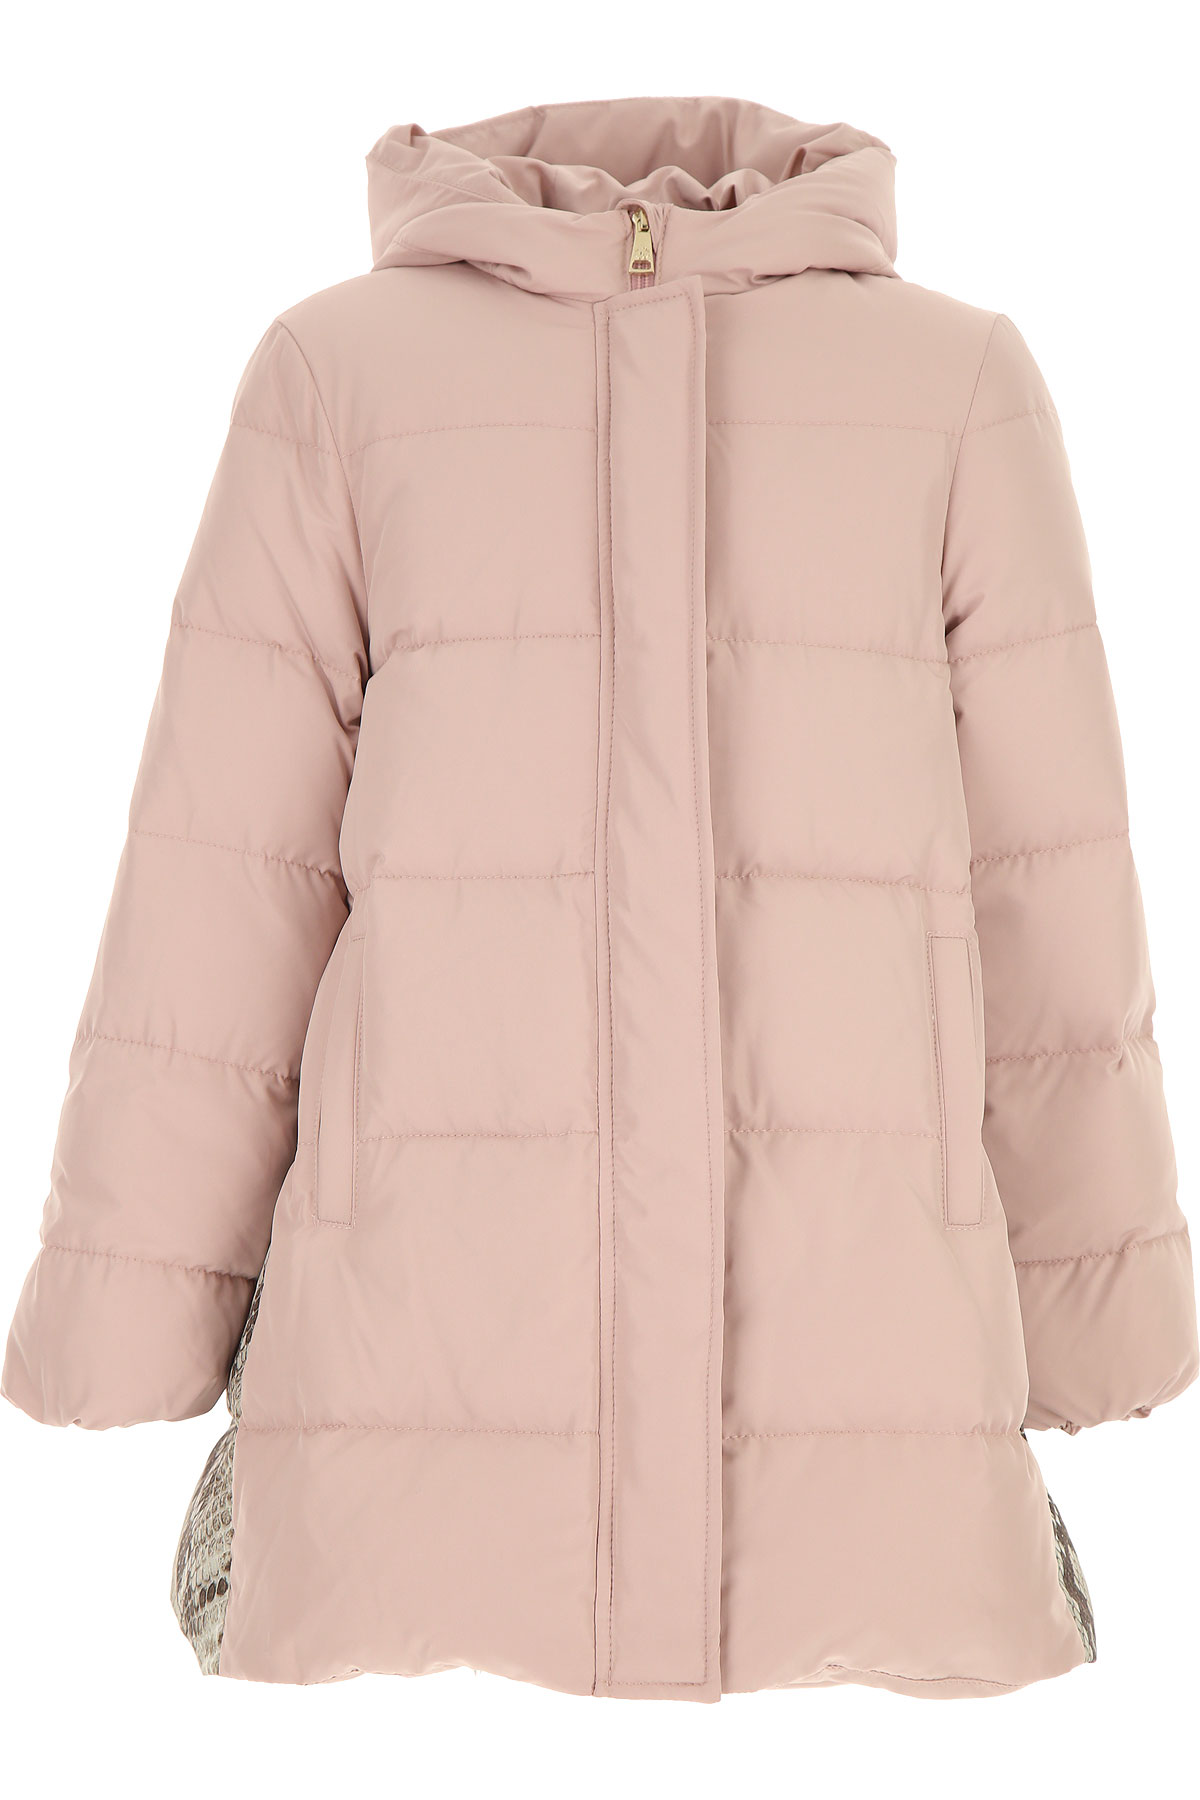 Roberto Cavalli Kinder Daunen Jacke für Mädchen, Soft Shell Ski Jacken Günstig im Sale, Pink, Polyester, 2017, L M S